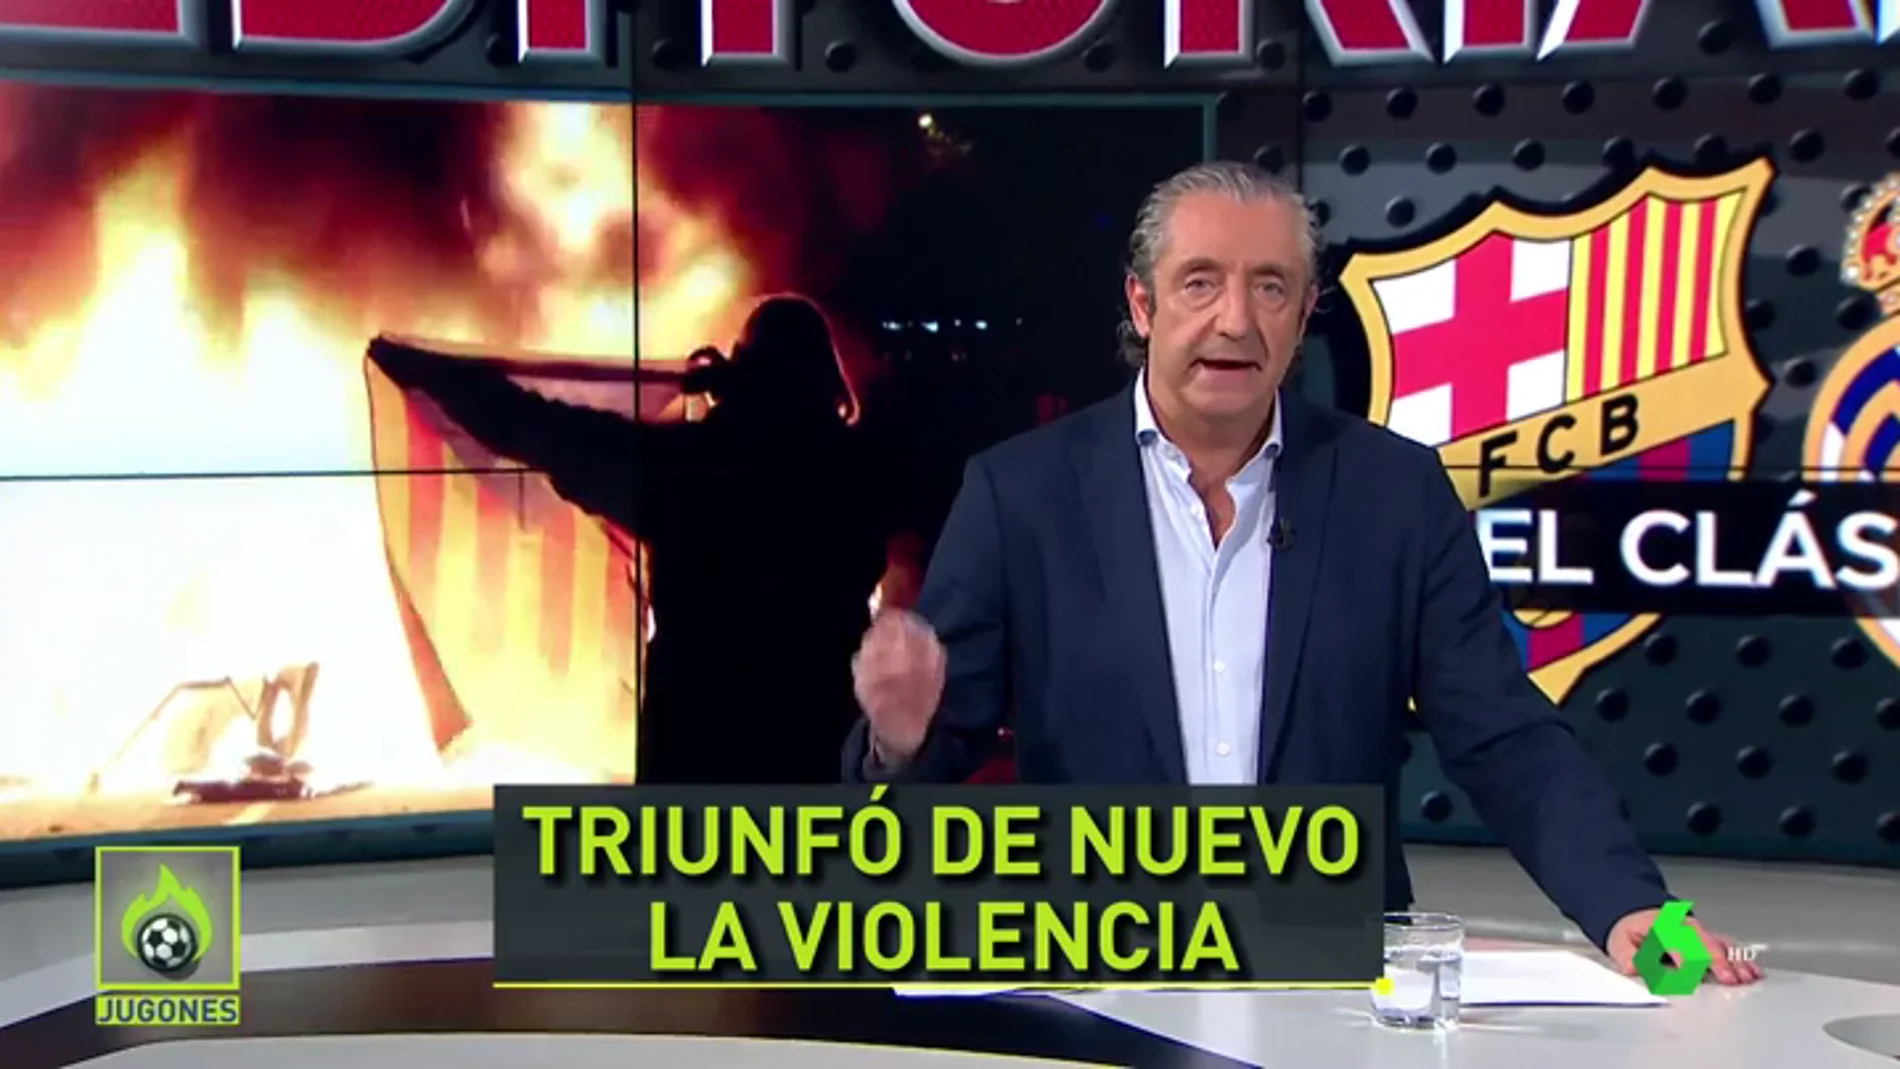 Josep Pedrerol y los disturbios en el Clásico: "El único Tsunami fue... el Real Madrid"